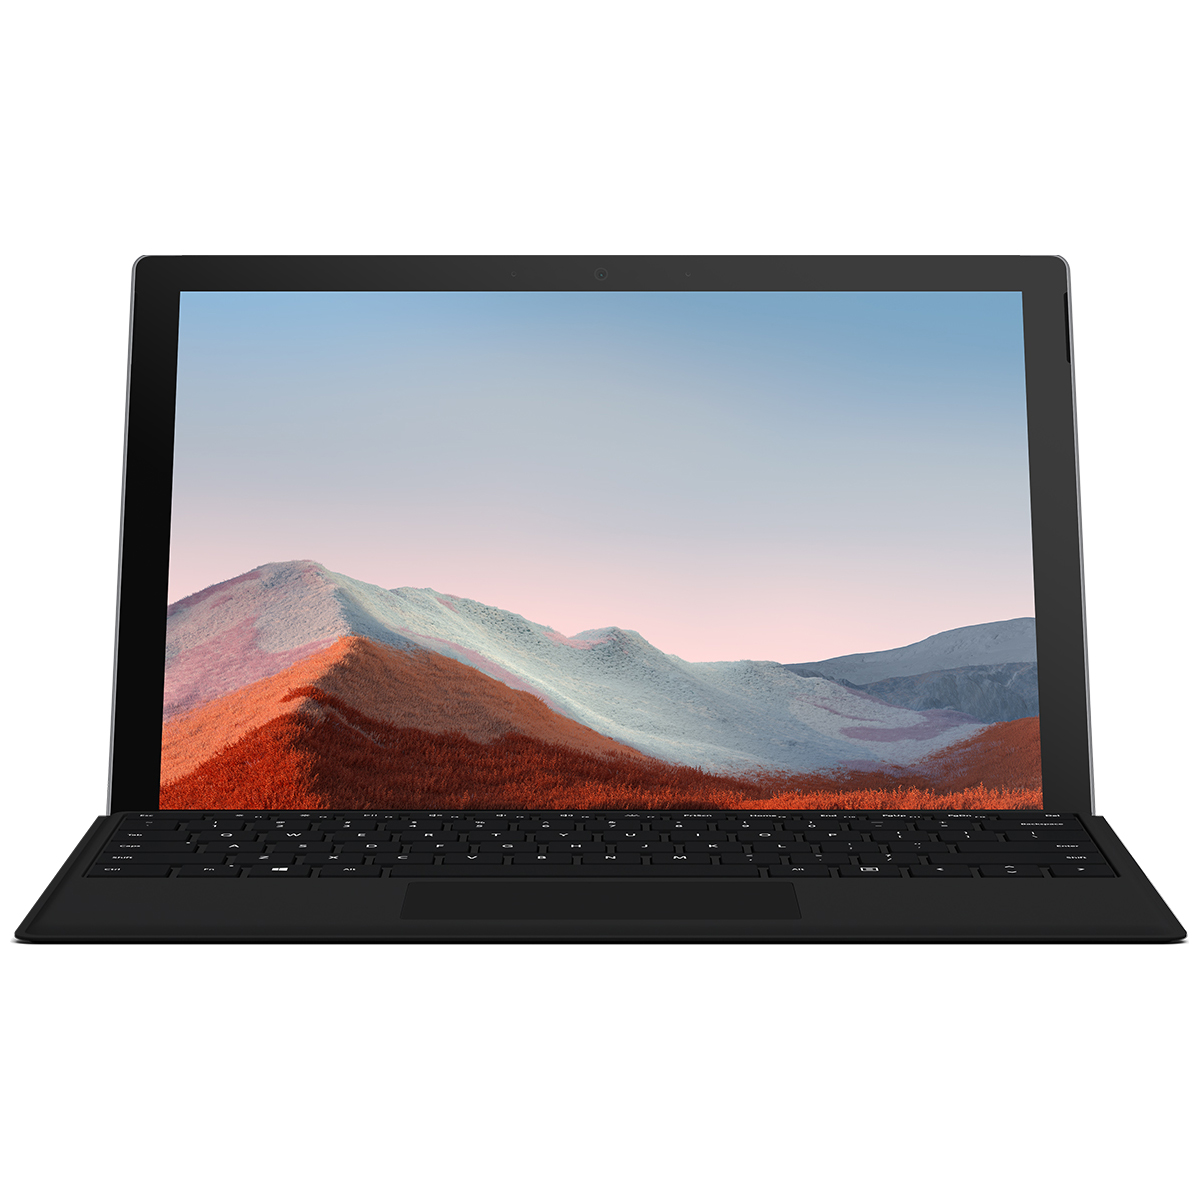 تبلت مایکروسافت مدل Surface Pro 7 Plus-i7 ظرفیت 512 گیگابایت و 16 گیگابایت رم به همراه کیبورد Black Type Cover